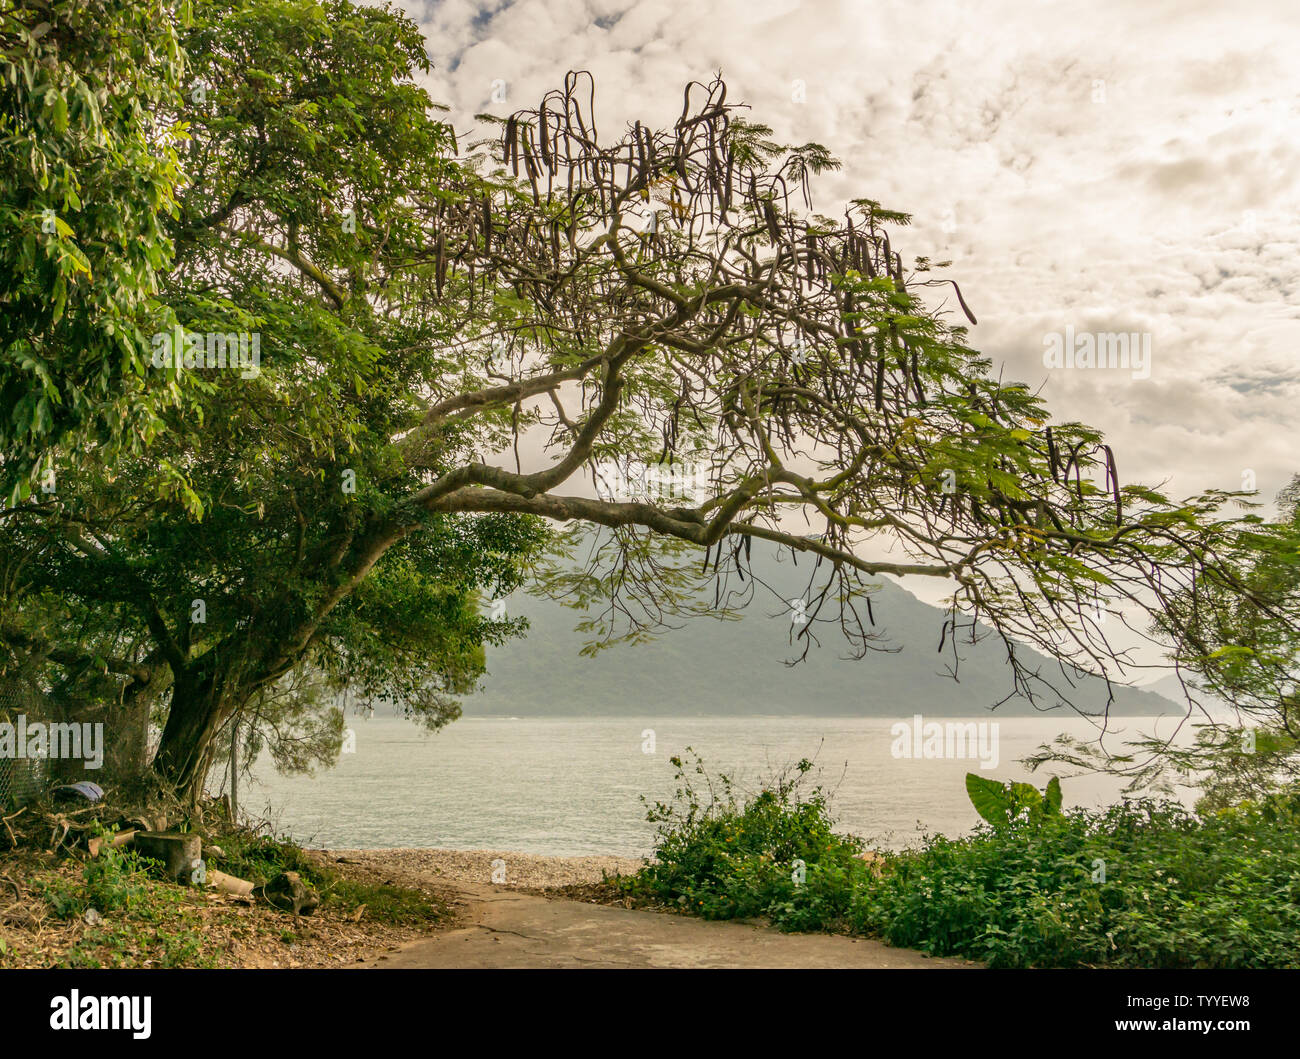 Ein Baum Frames der South China Sea und Launtau monutains der Insel als vom Th Fischerdorf Tai O in Hongkong gesehen. Stockfoto